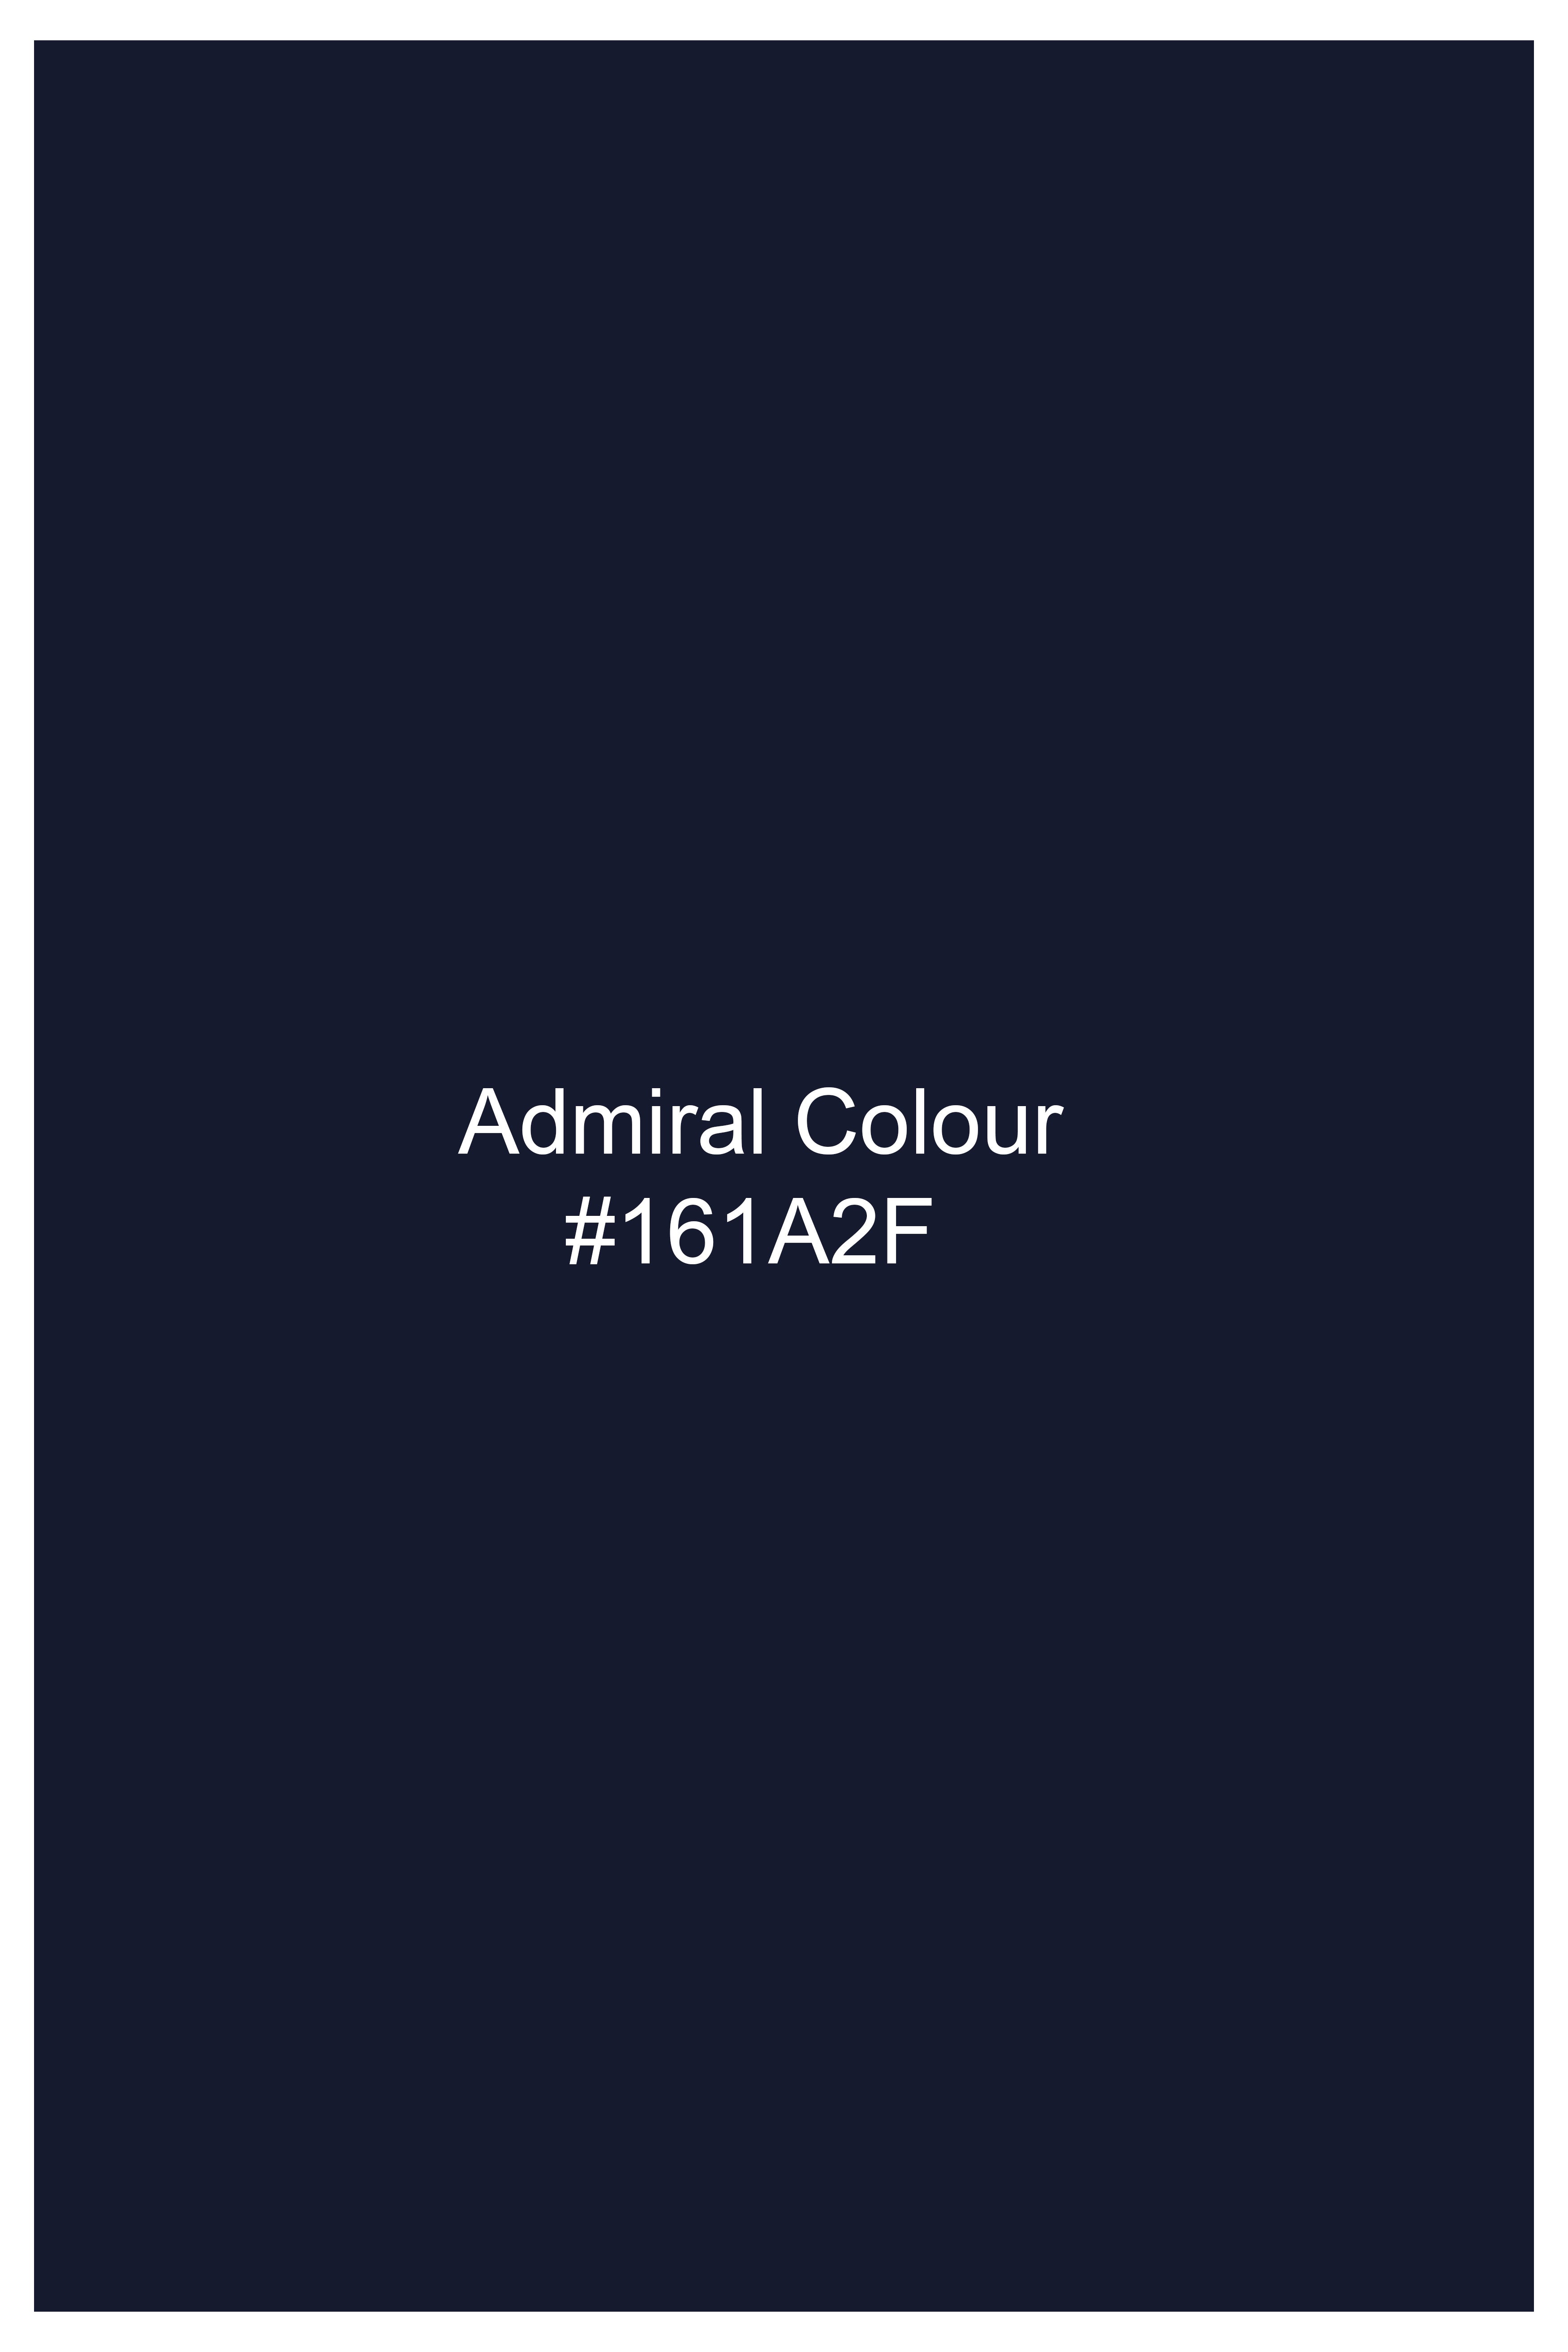 Admiral Blue Hand Painted Luxurious Linen Designer Shirt 6708-BD-BLE-ART-38, 6708-BD-BLE-ART-H-38, 6708-BD-BLE-ART-39, 6708-BD-BLE-ART-H-39, 6708-BD-BLE-ART-40, 6708-BD-BLE-ART-H-40, 6708-BD-BLE-ART-42, 6708-BD-BLE-ART-H-42, 6708-BD-BLE-ART-44, 6708-BD-BLE-ART-H-44, 6708-BD-BLE-ART-46, 6708-BD-BLE-ART-H-46, 6708-BD-BLE-ART-48, 6708-BD-BLE-ART-H-48, 6708-BD-BLE-ART-50, 6708-BD-BLE-ART-H-50, 6708-BD-BLE-ART-52, 6708-BD-BLE-ART-H-52